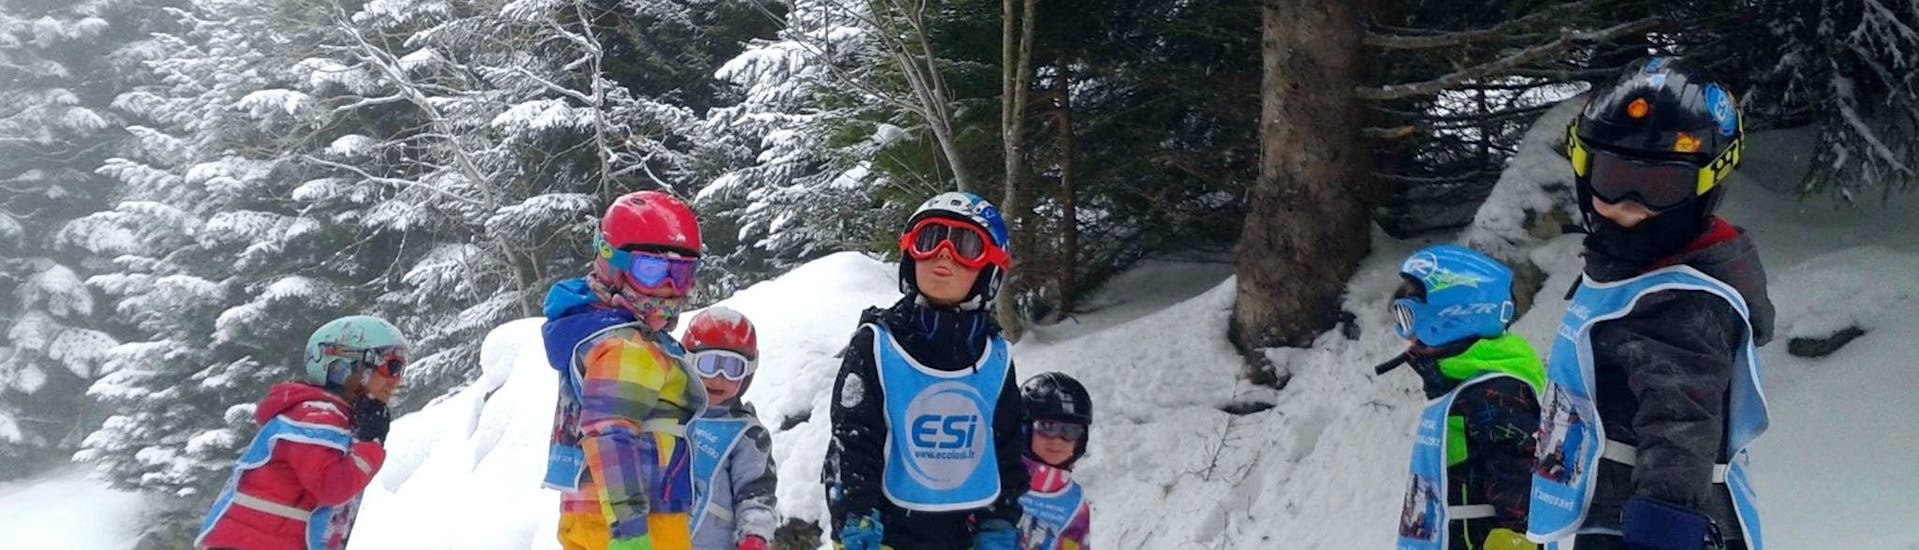 Des enfants se tiennent au milieu de la piste entourés d'arbres pendant leur Cours de ski pour Enfants (3-15 ans) - Week-end avec l'école de ski ESI Ecoloski Barèges.